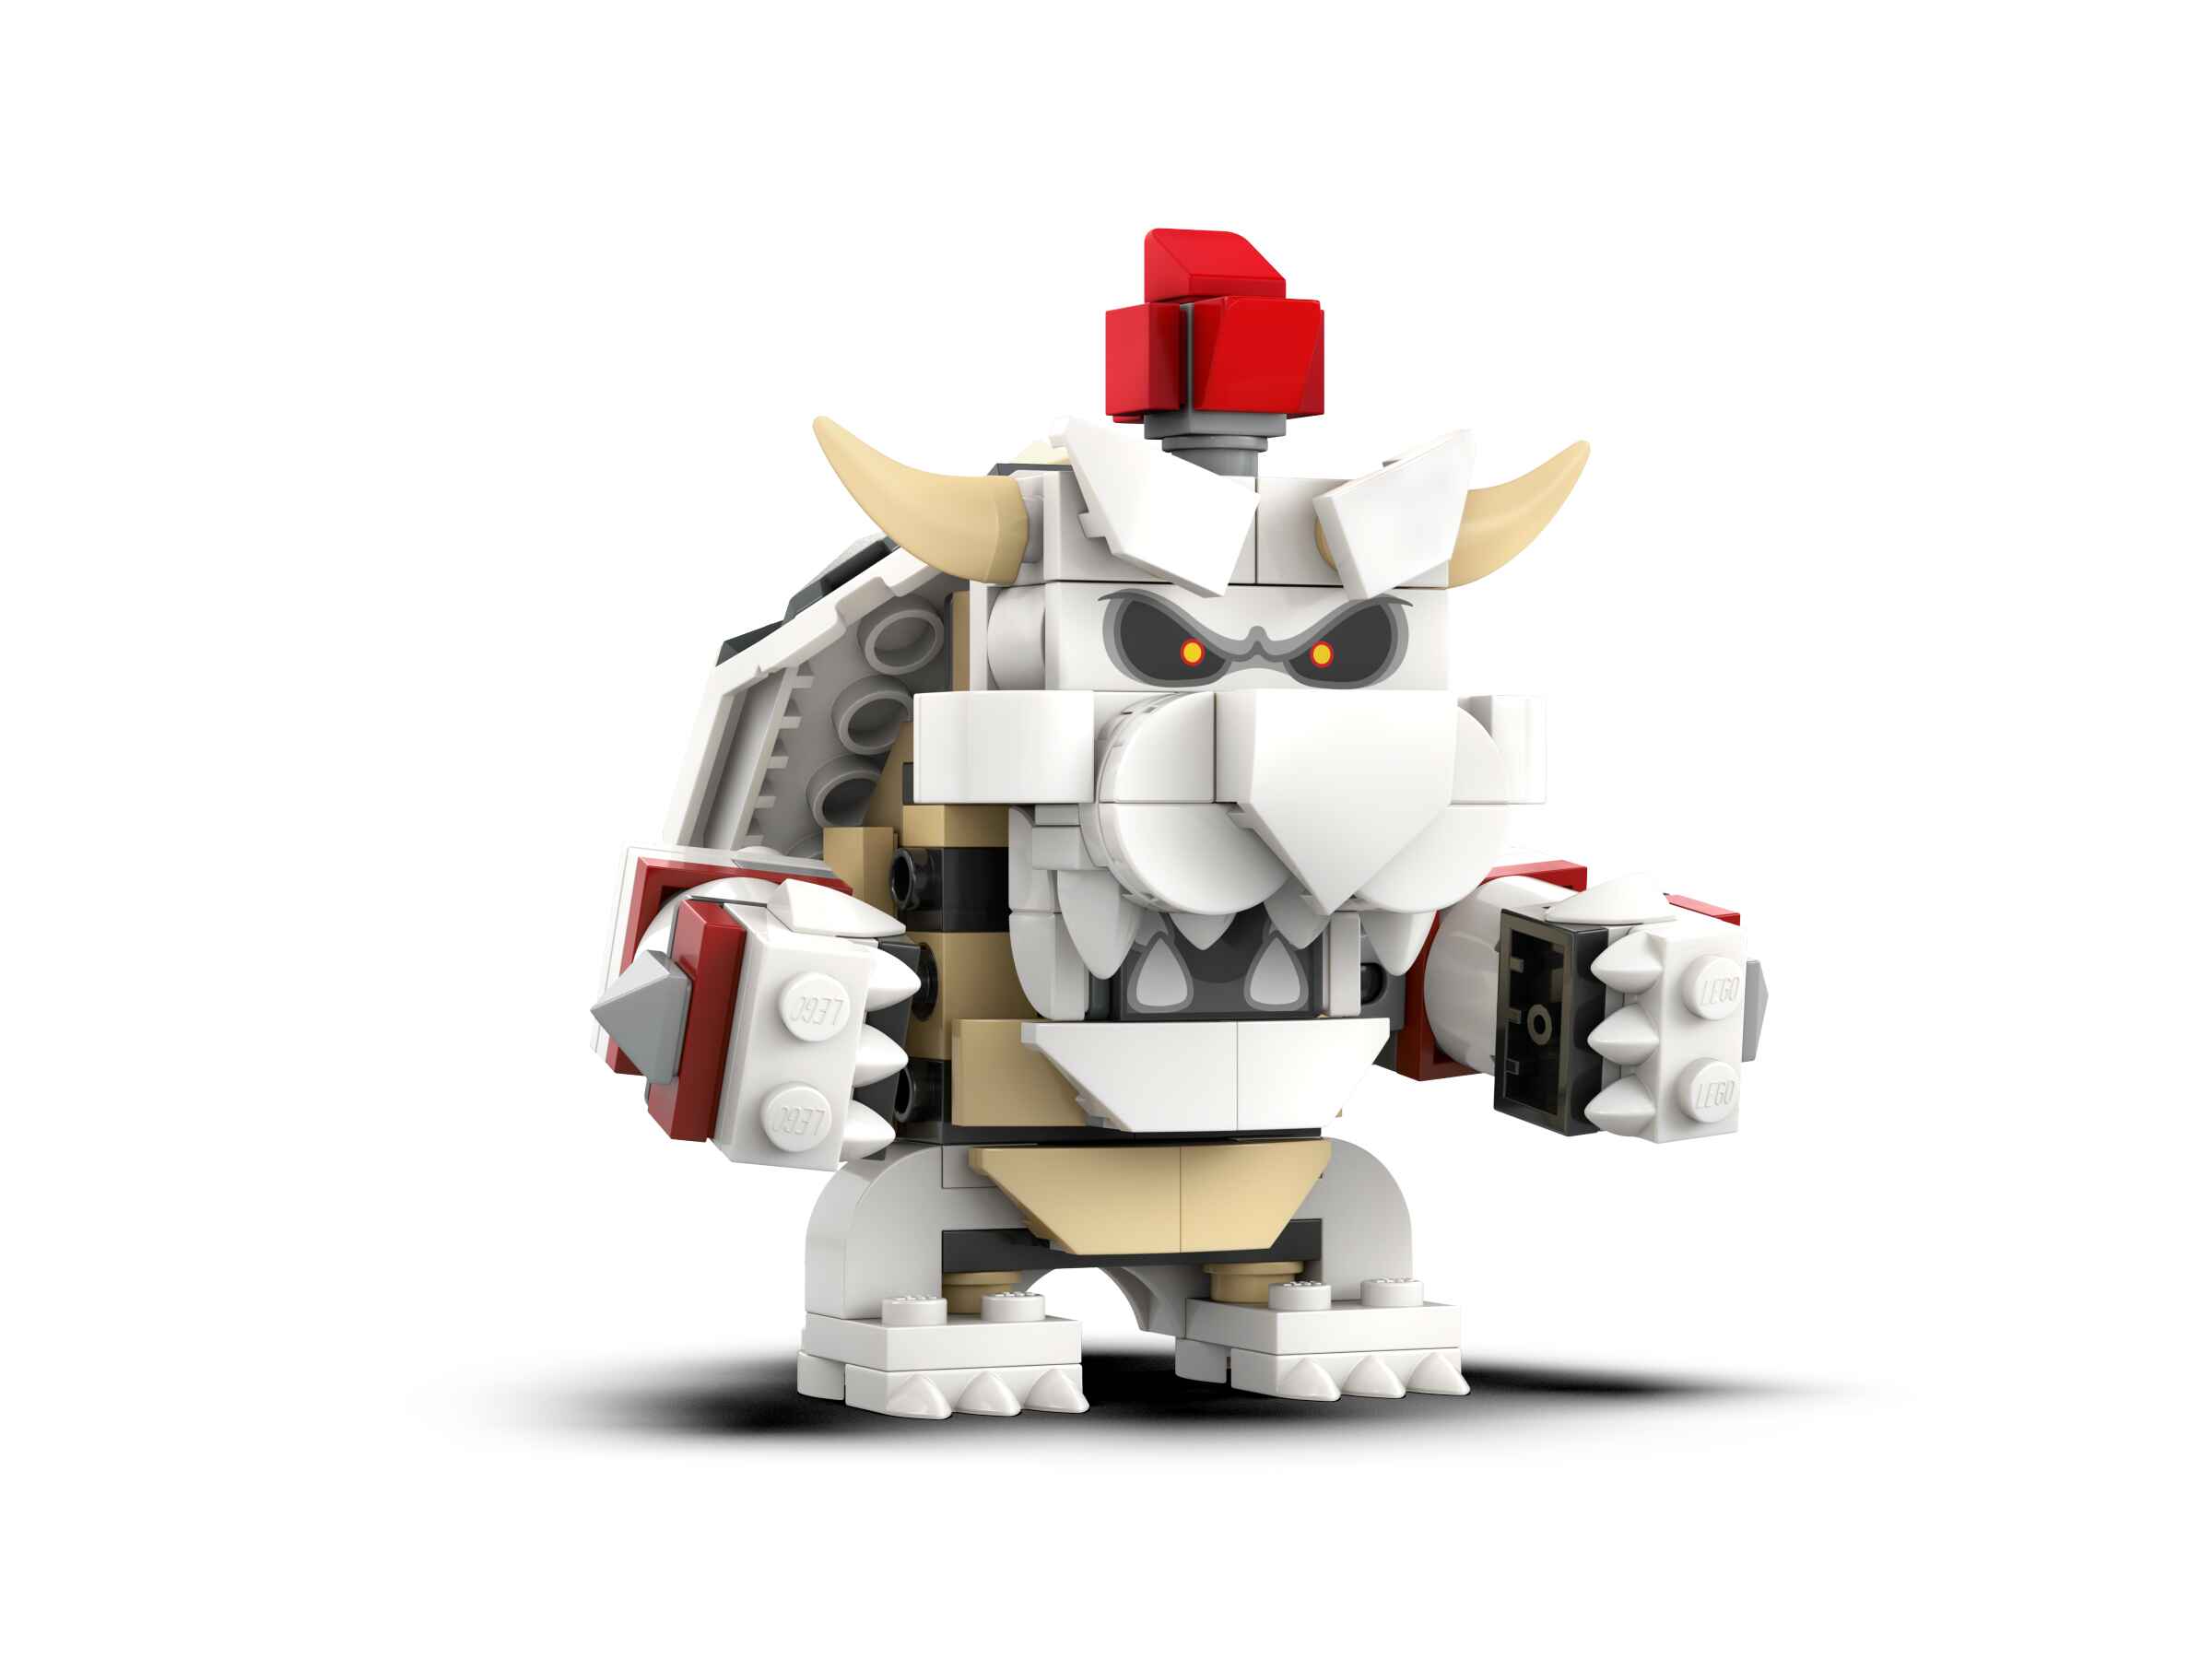 LEGO 71423 Super Mario Knochen-Bowsers Festungsschlacht – Erweiterungsset